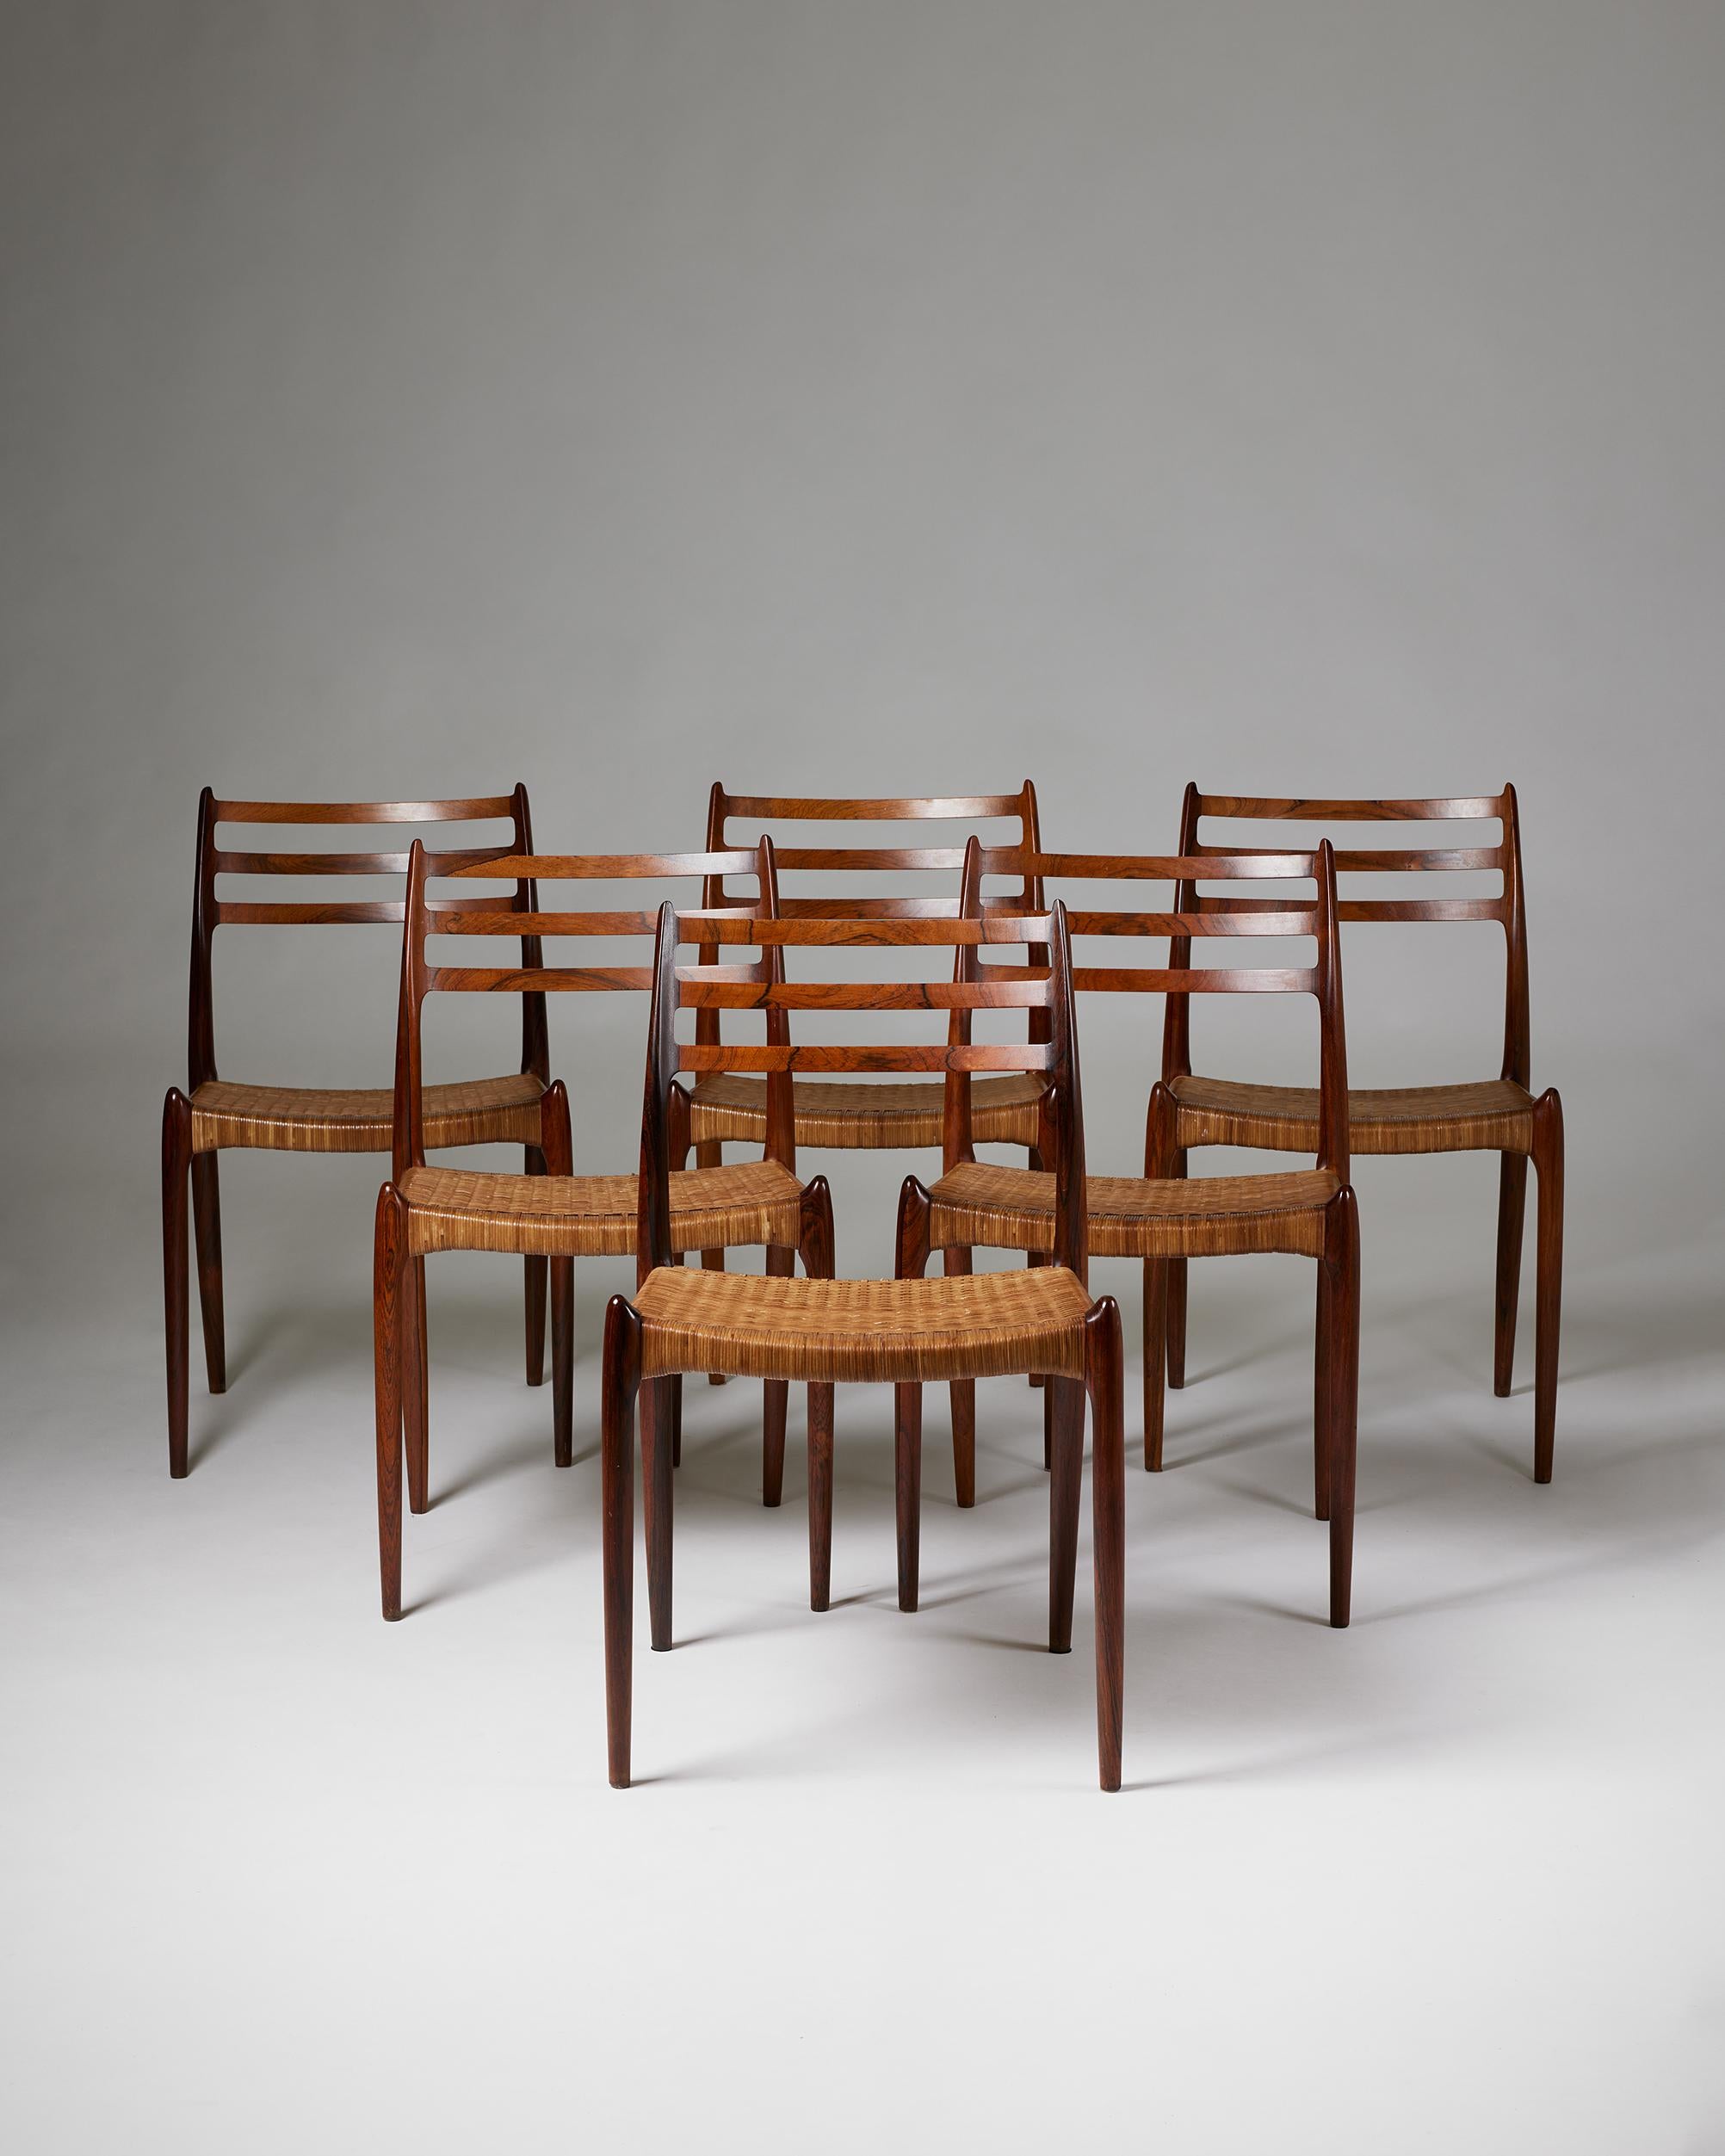 Satz von sechs Esszimmerstühlen Modell 78, entworfen von Niels O. Möller für Möller Höjbjerg,
Dänemark, 1962.

Brasilianisches Palisanderholz und geflochtenes Schilfrohr.

Gestempelt.

In den 1960er Jahren von den Eltern des heutigen Eigentümers